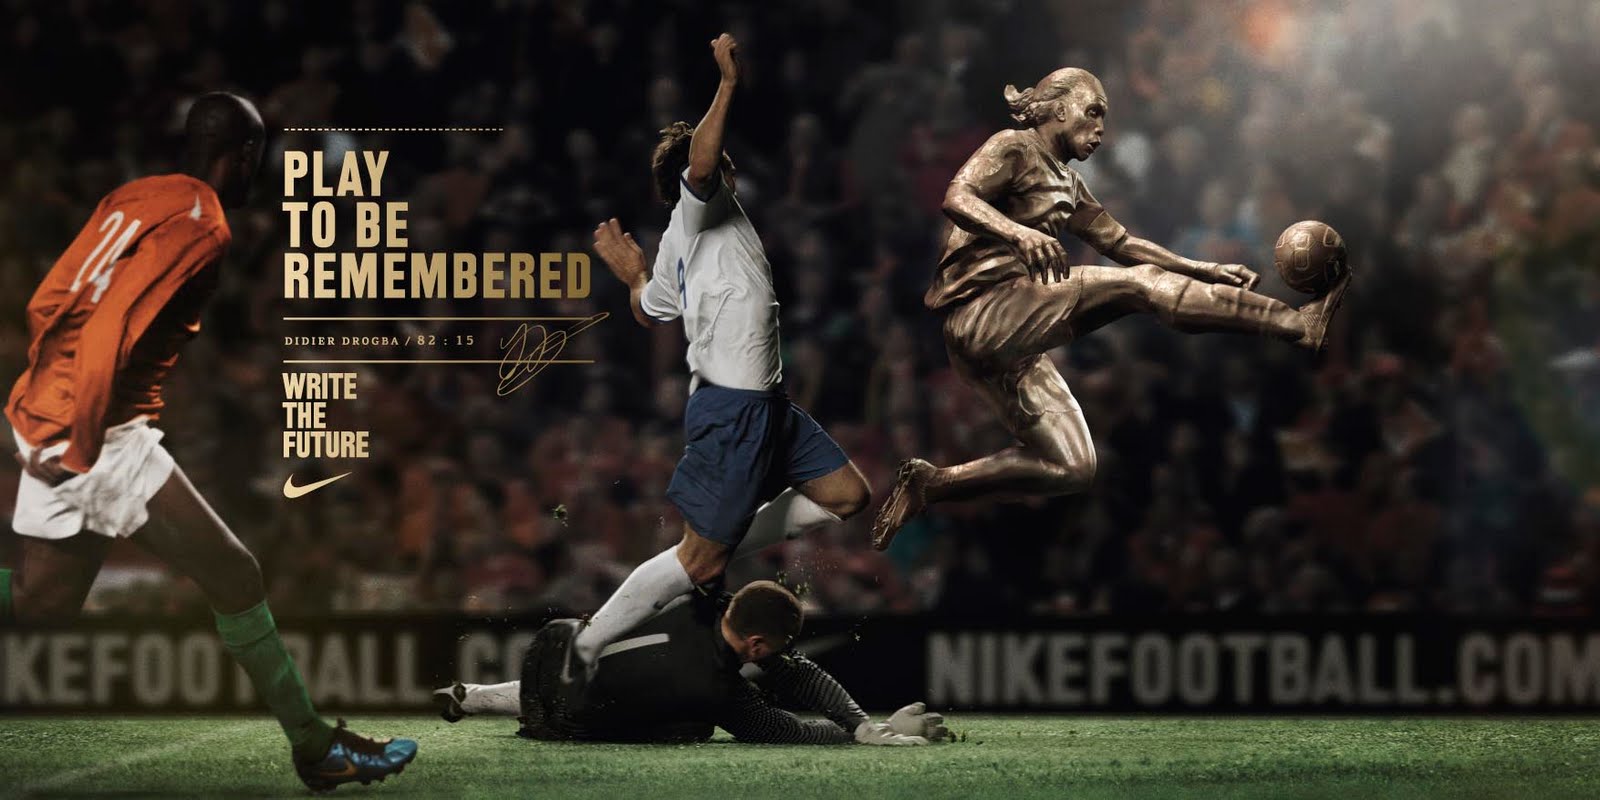 Publicité Nike football